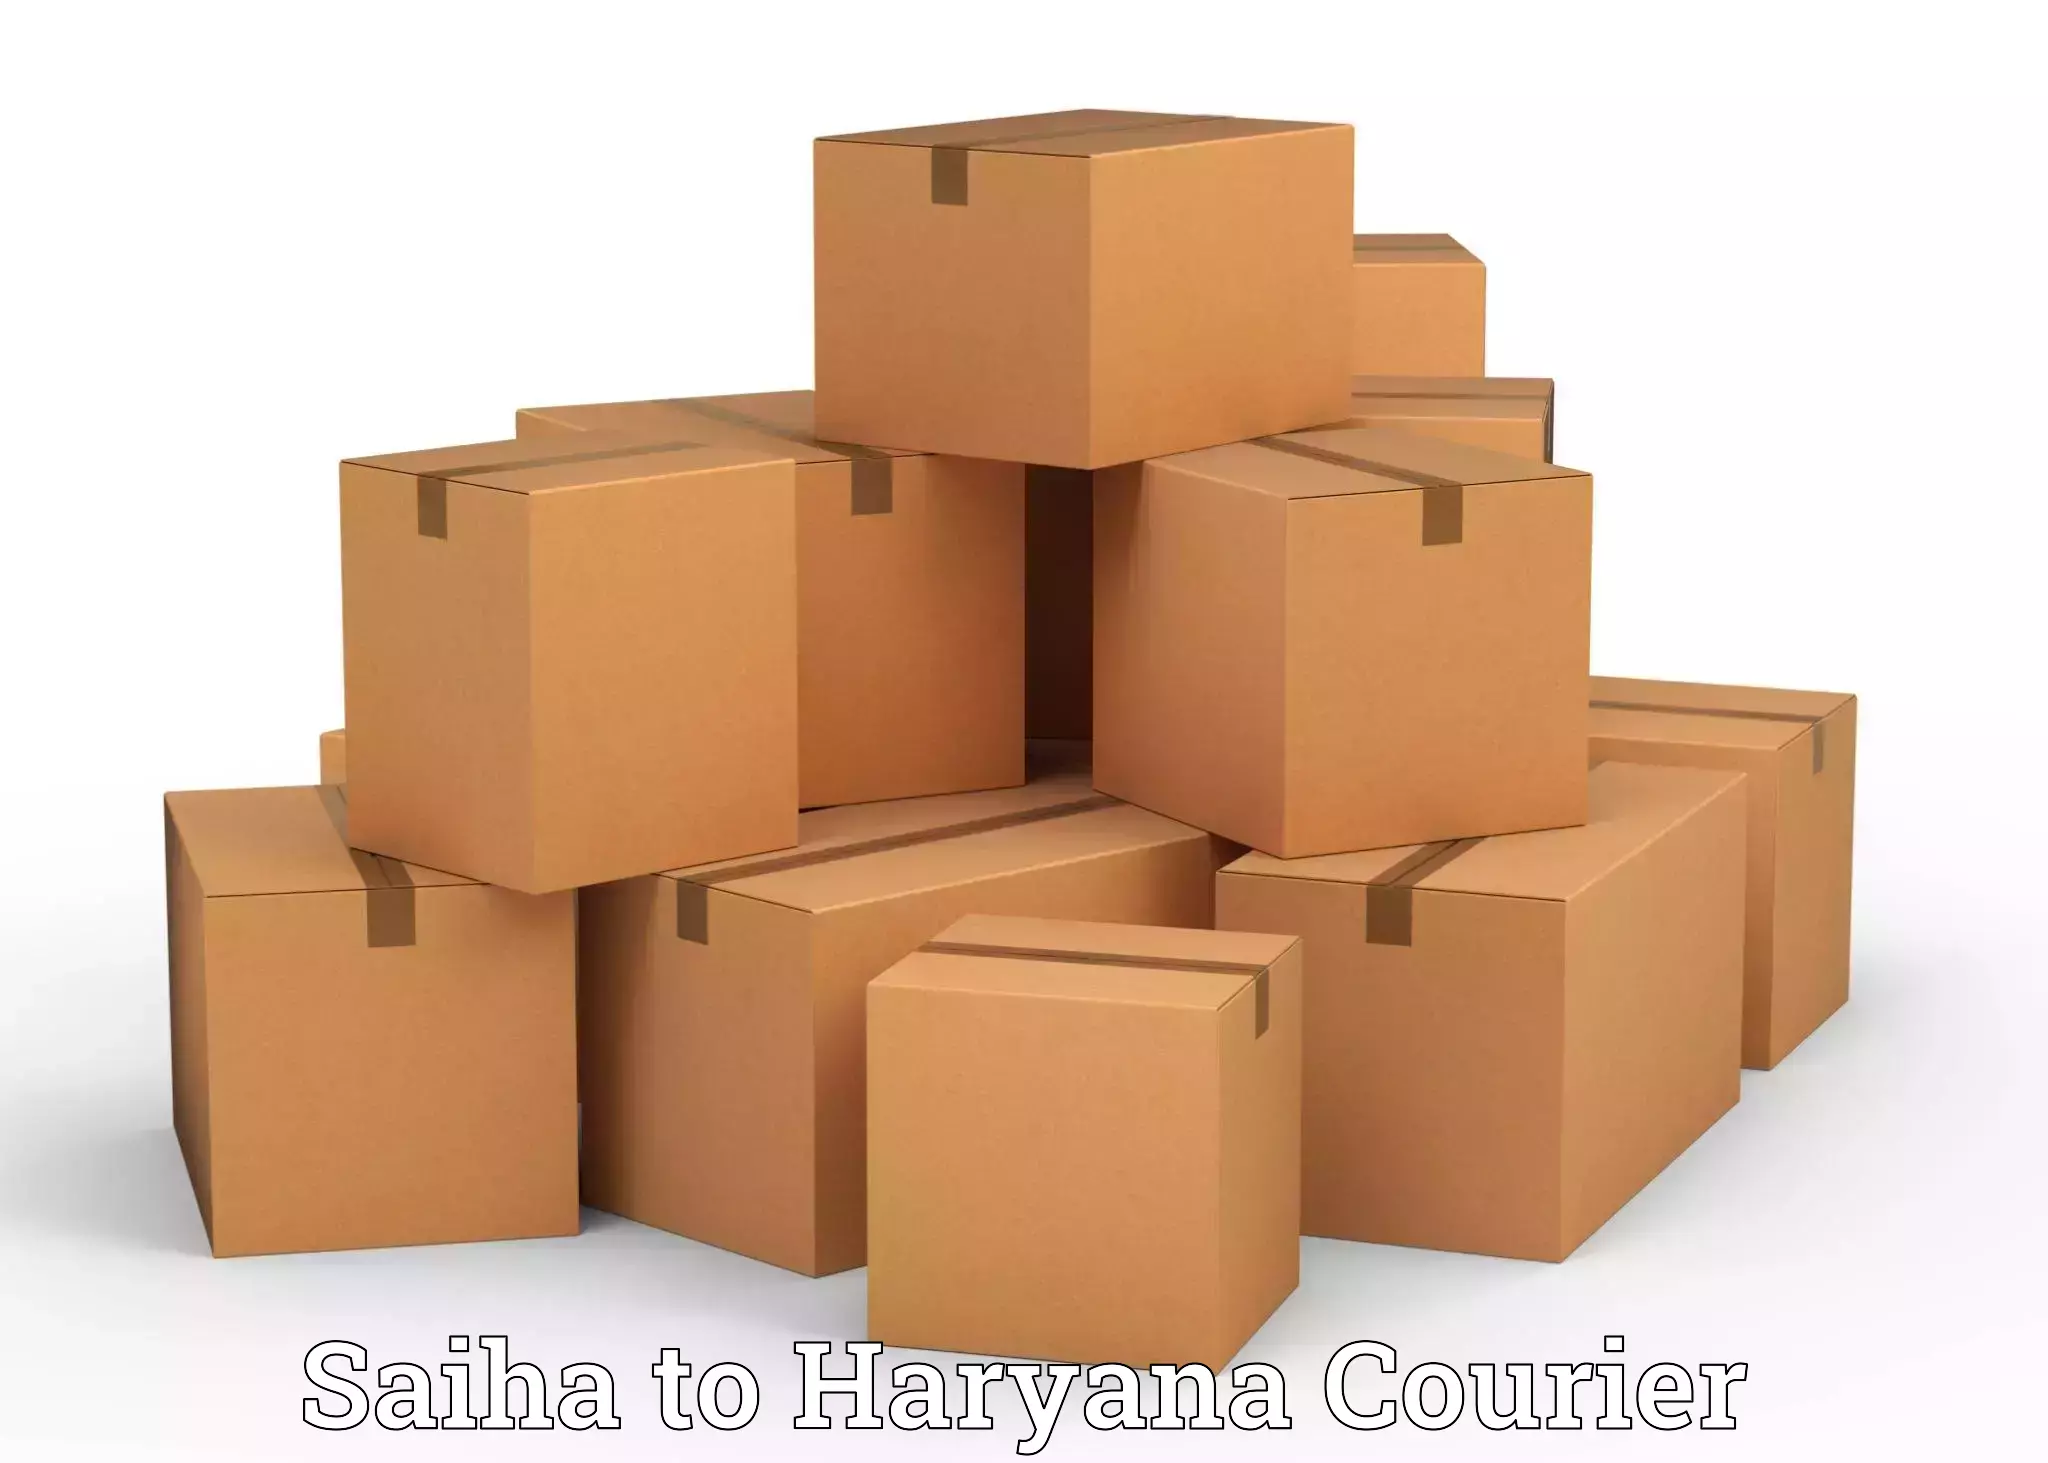 Furniture moving experts Saiha to Haryana